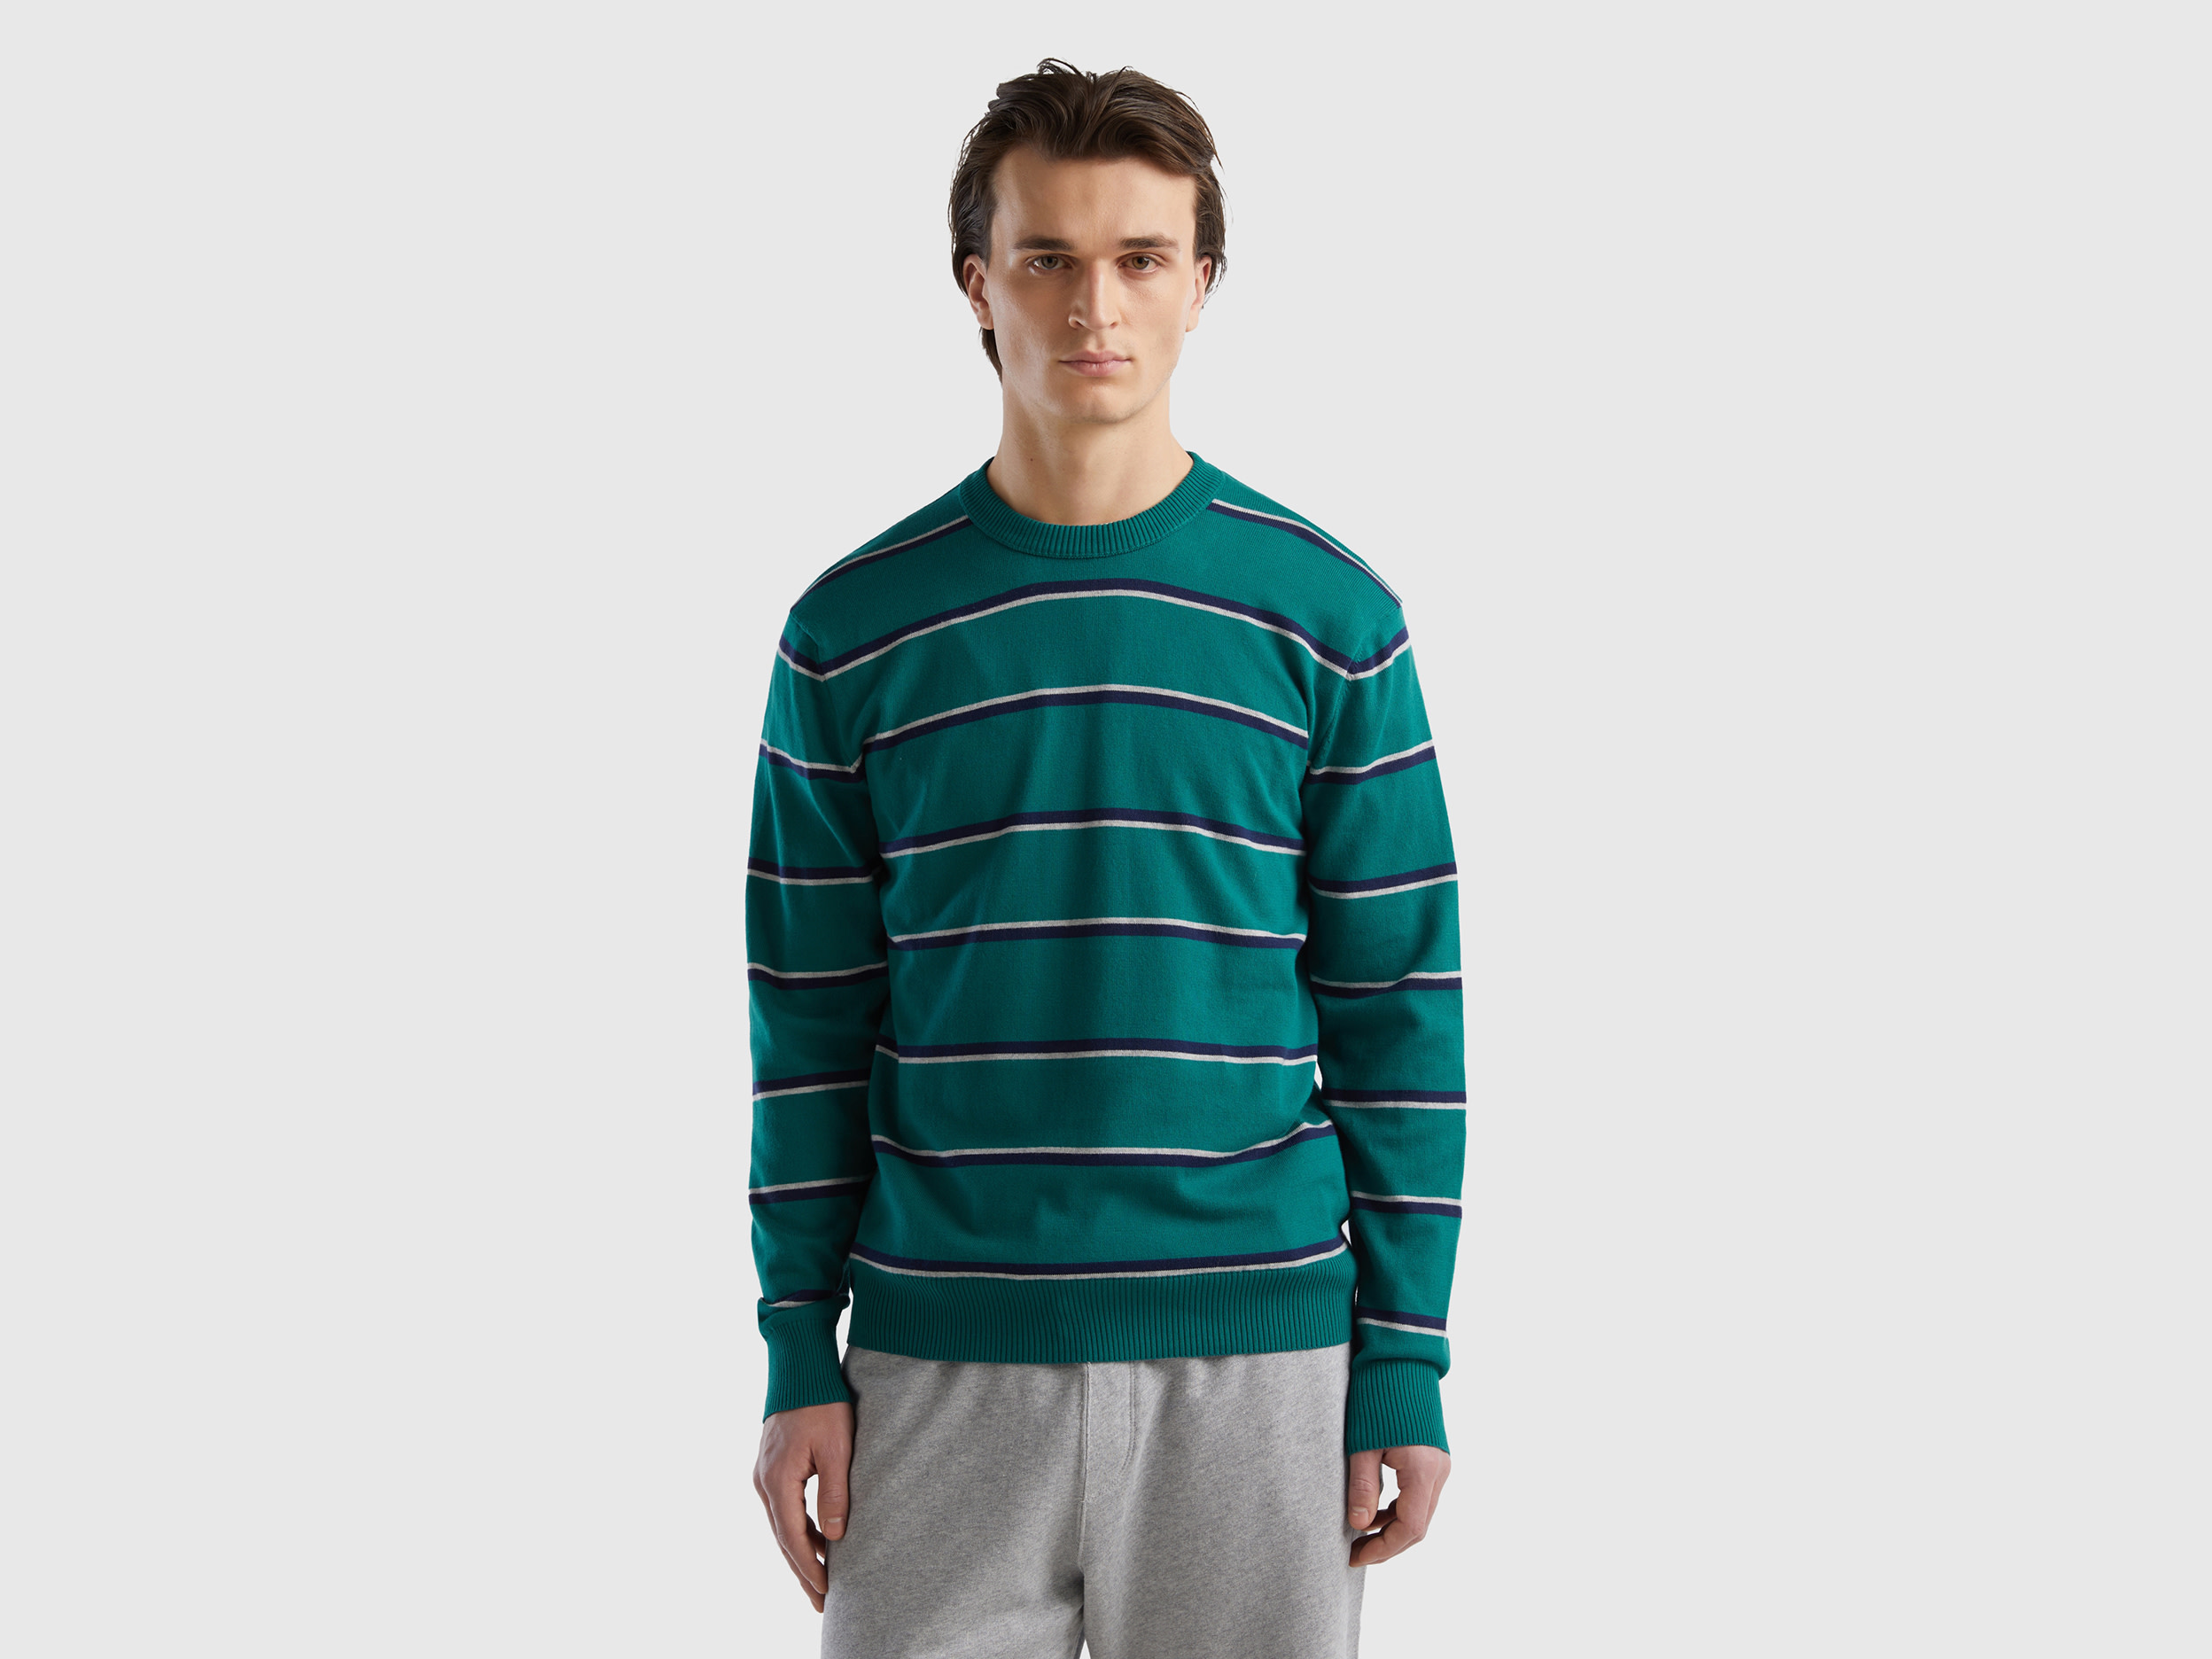 Benetton, Striped 100% Cotton Sweater, size XL, Dark Green, Men